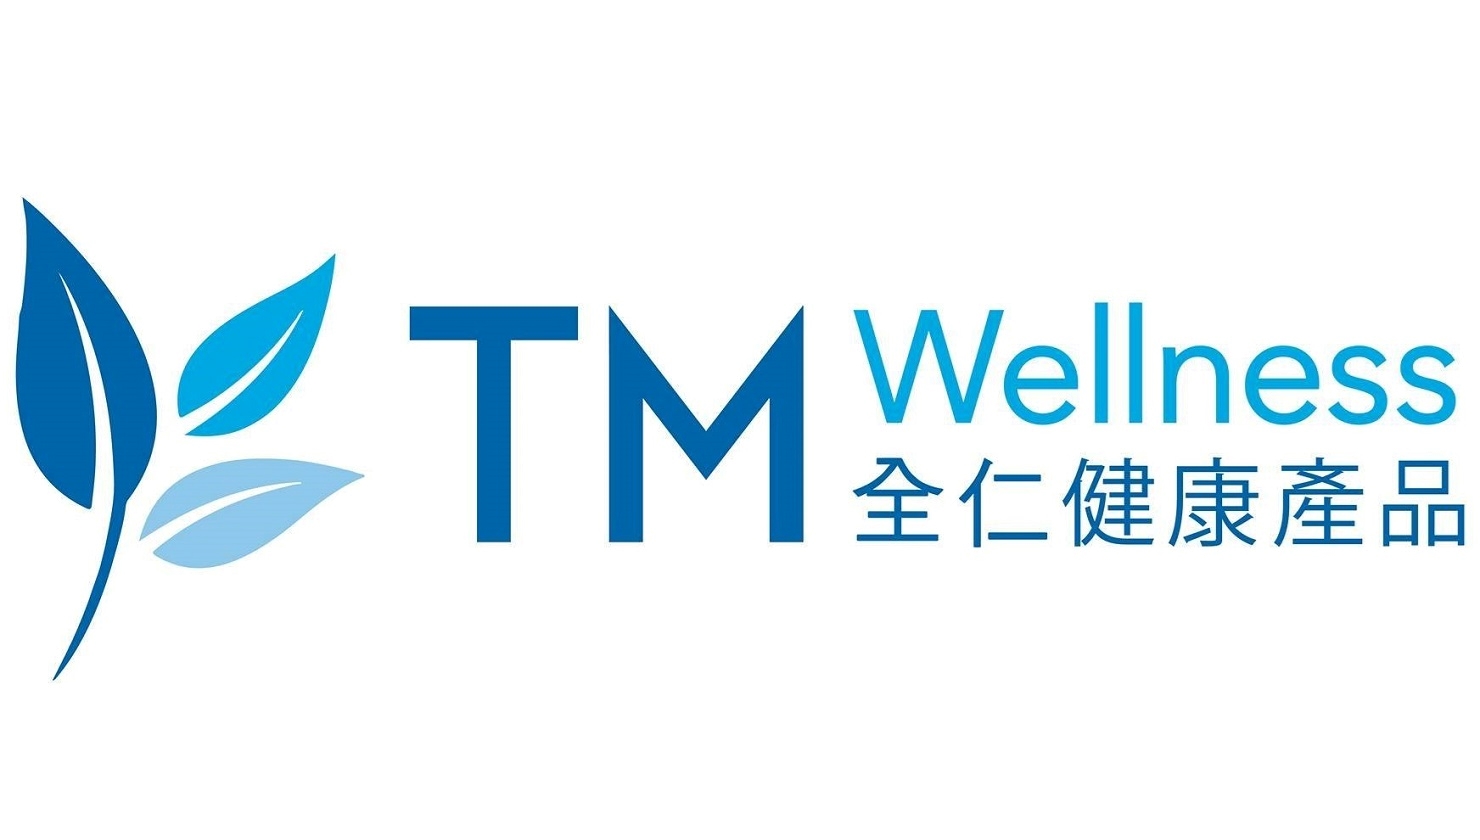 全仁健康產品 TM Wellness 